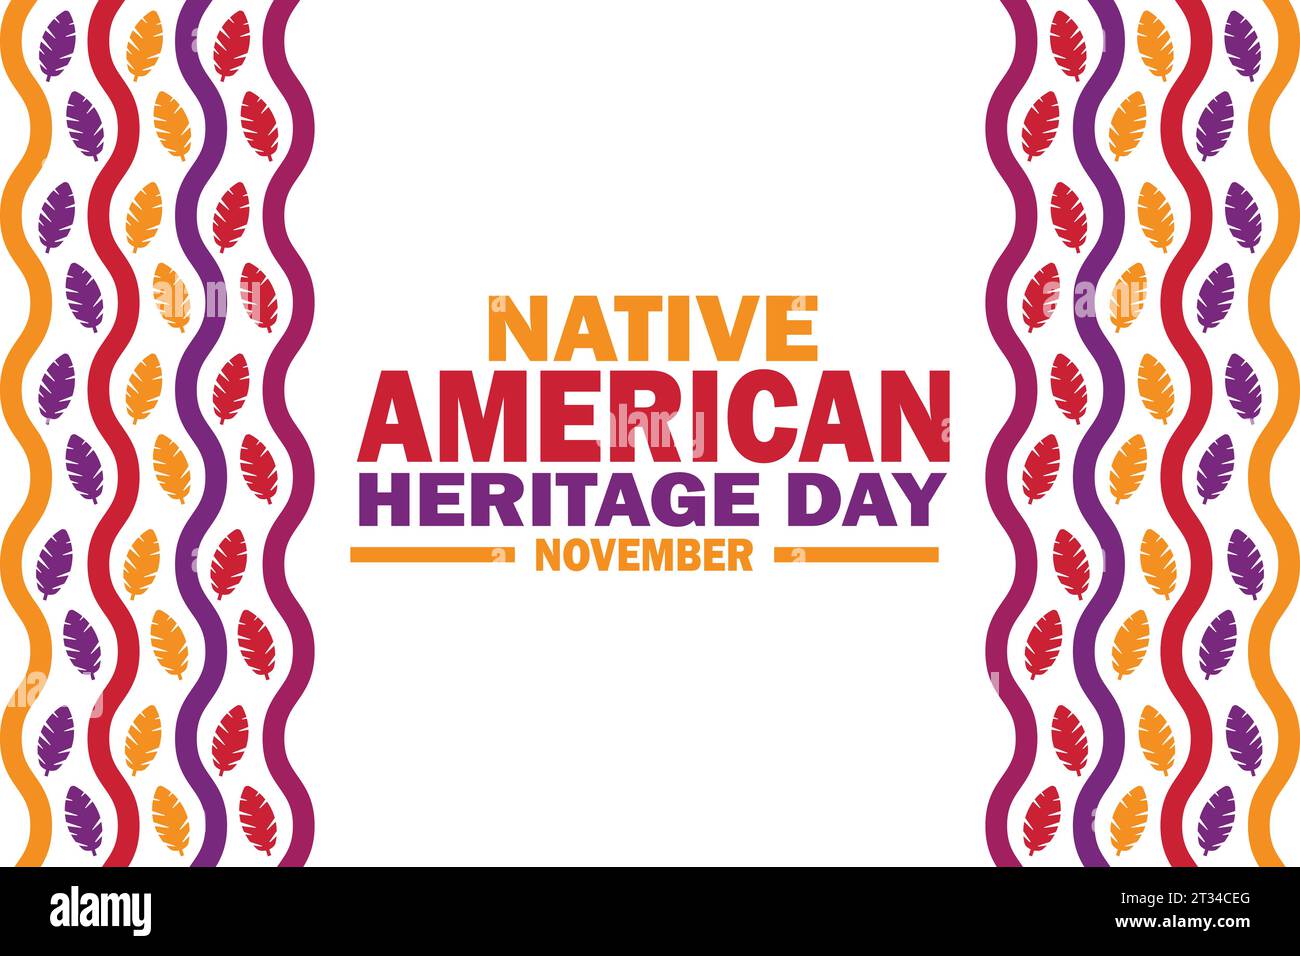 Día de la herencia nativa americana ilustración vectorial. Noviembre. Conveniente para la tarjeta de felicitación, cartel y banner Ilustración del Vector